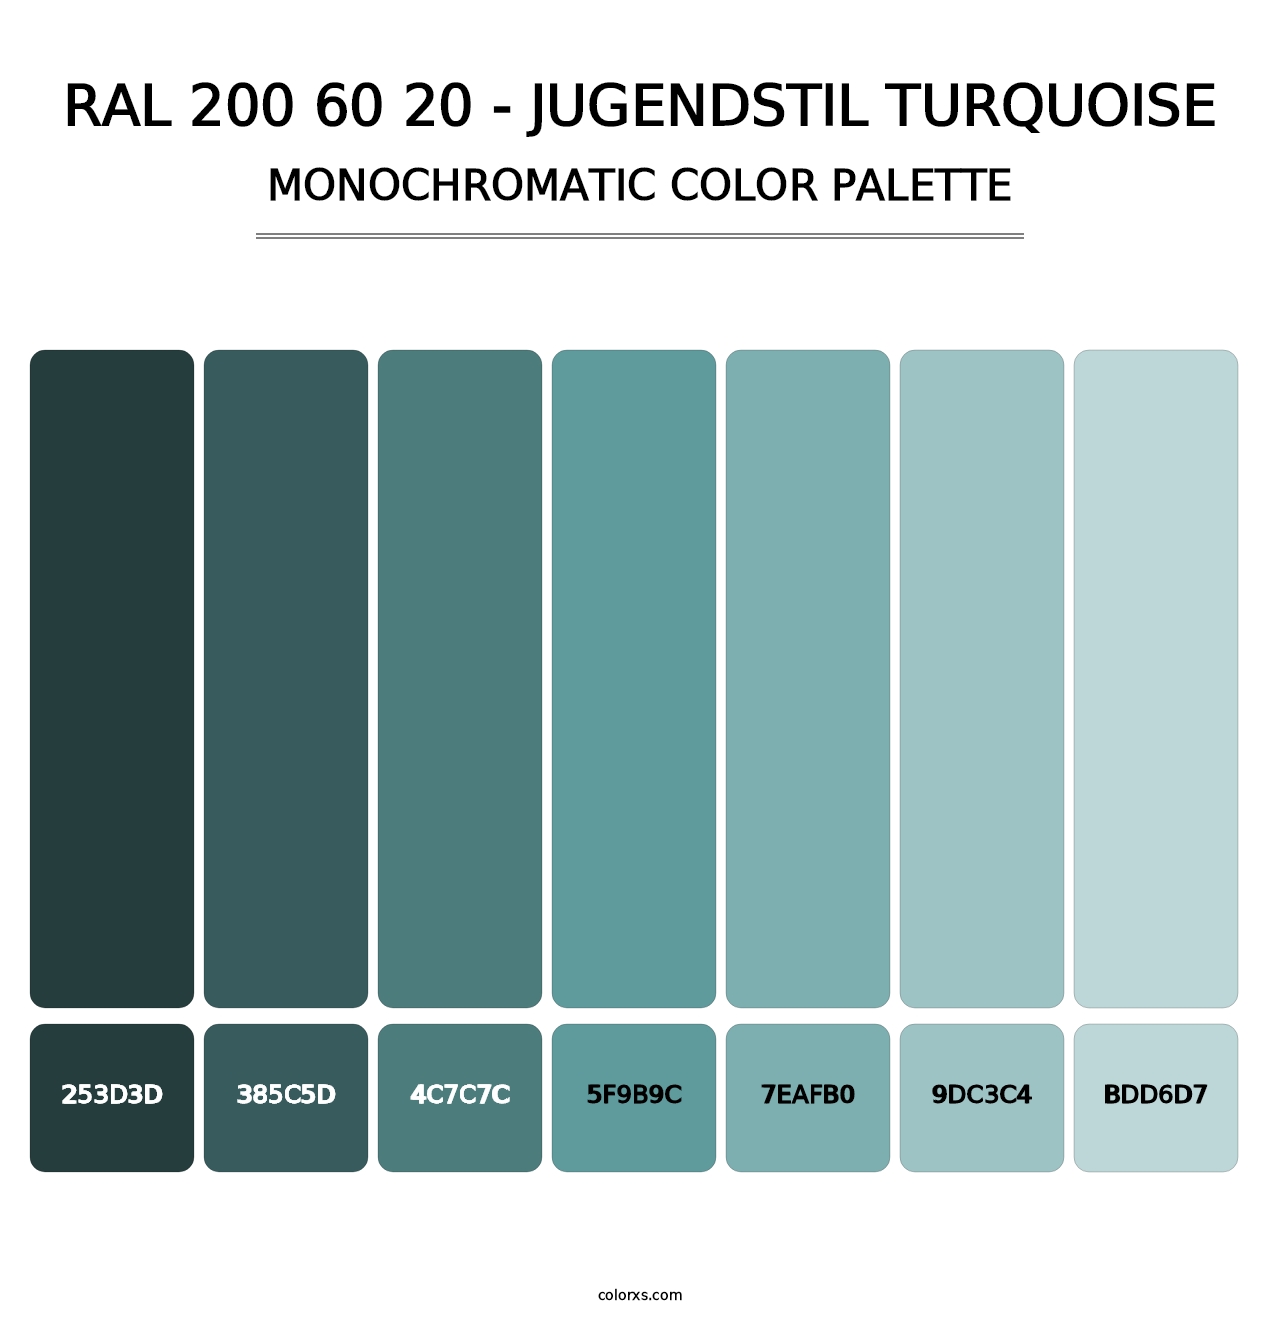 RAL 200 60 20 - Jugendstil Turquoise - Monochromatic Color Palette